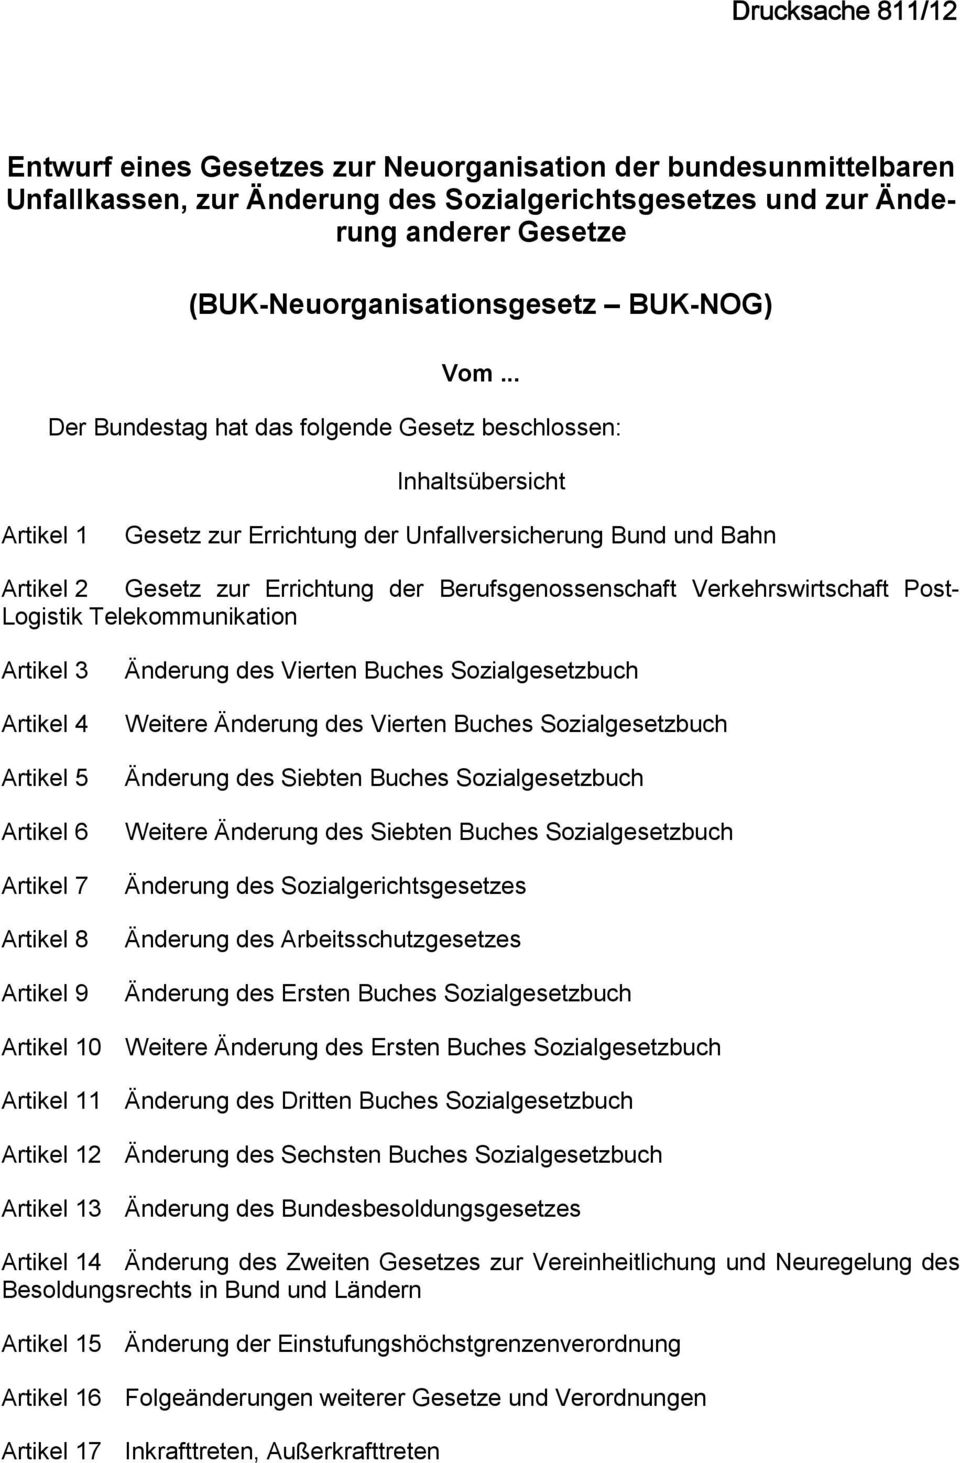 .. Der Bundestag hat das folgende Gesetz beschlossen: Inhaltsübersicht Artikel 1 Gesetz zur Errichtung der Unfallversicherung Bund und Bahn Artikel 2 Gesetz zur Errichtung der Berufsgenossenschaft